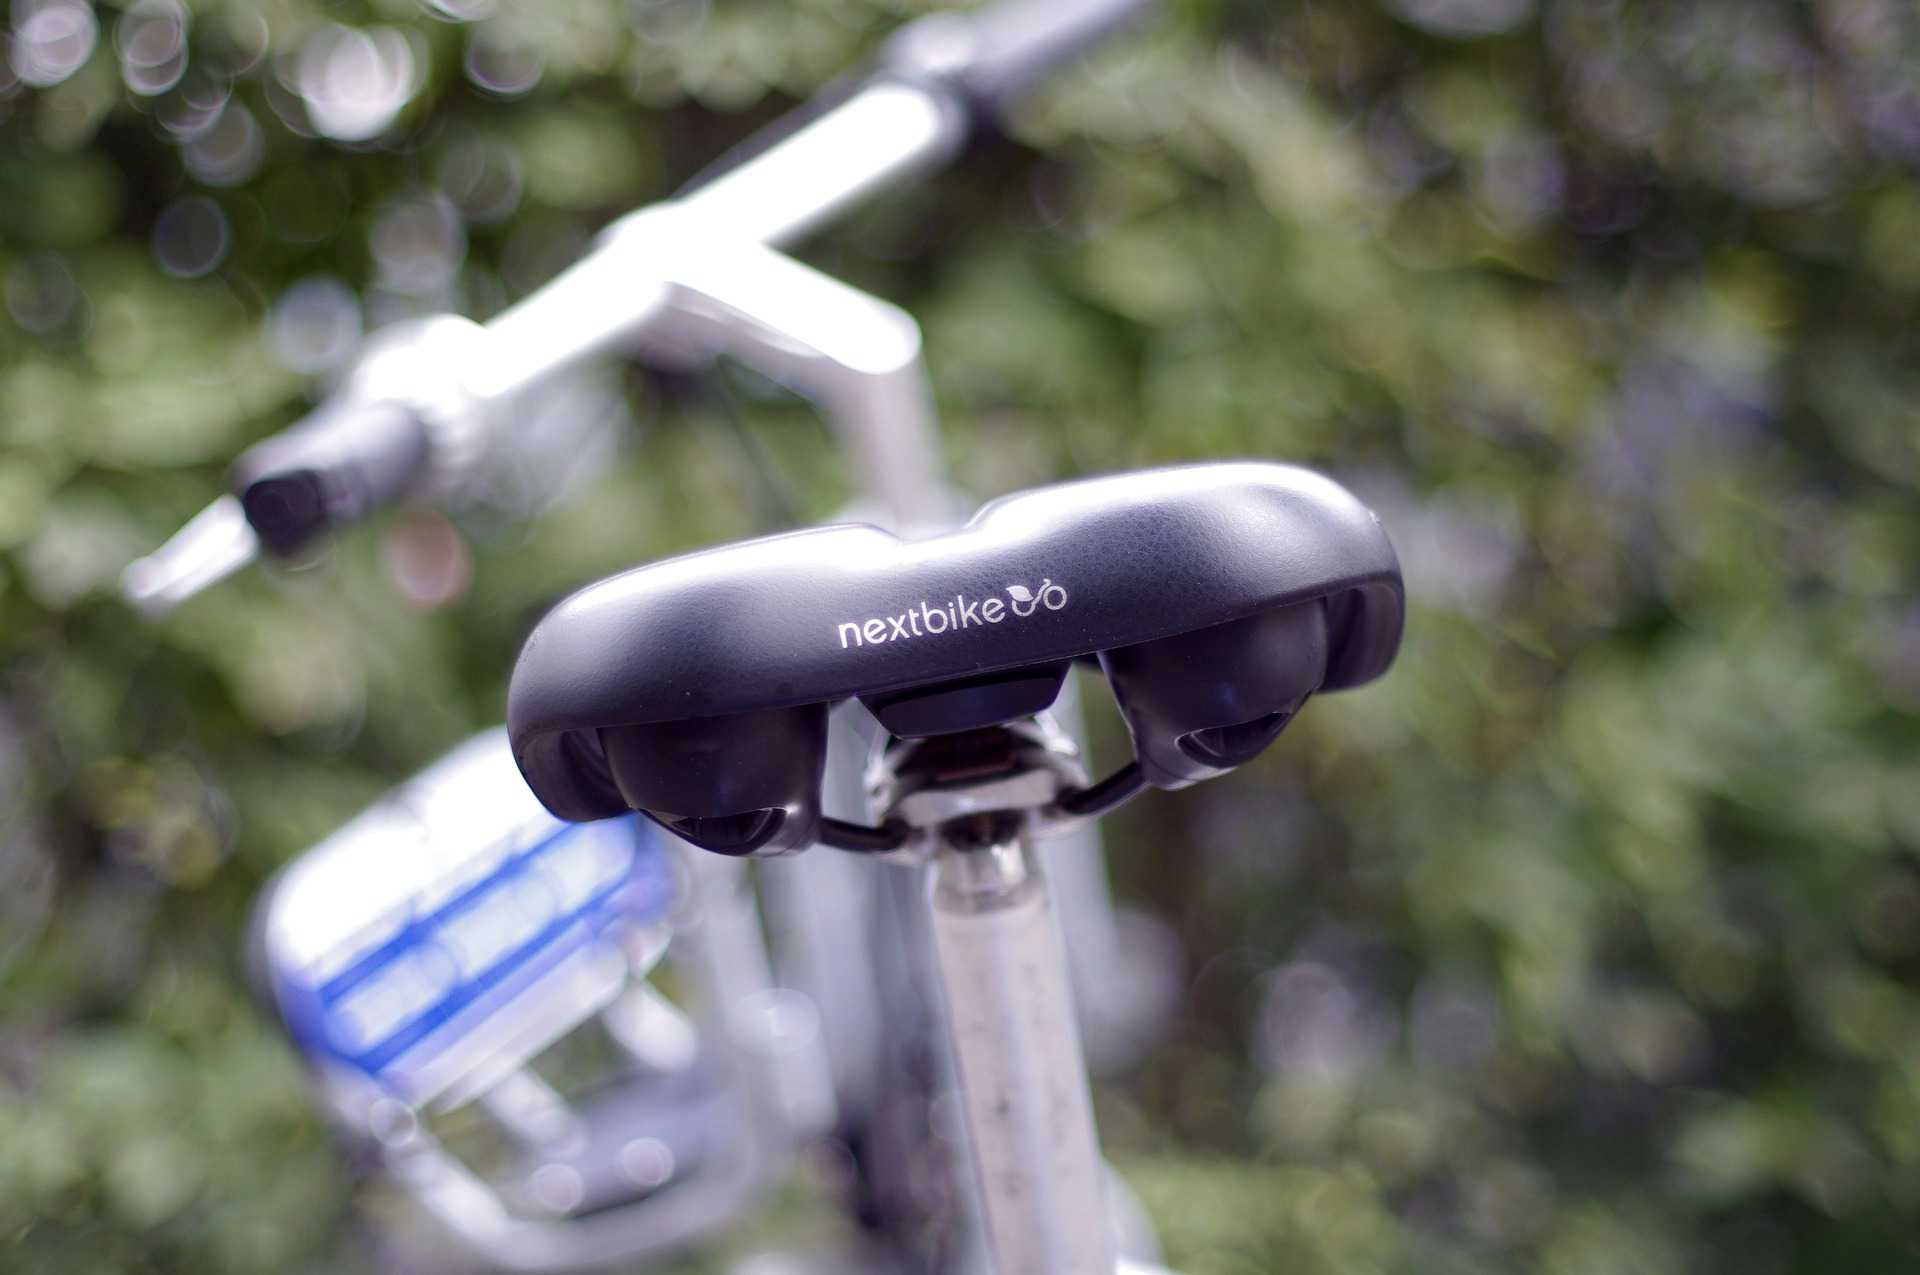 Nextbike-Fahrrad. 16850449, Pixabay. https://pixabay.com/de/photos/nextbike-bike-fahrrad-radfahrer-5301950/